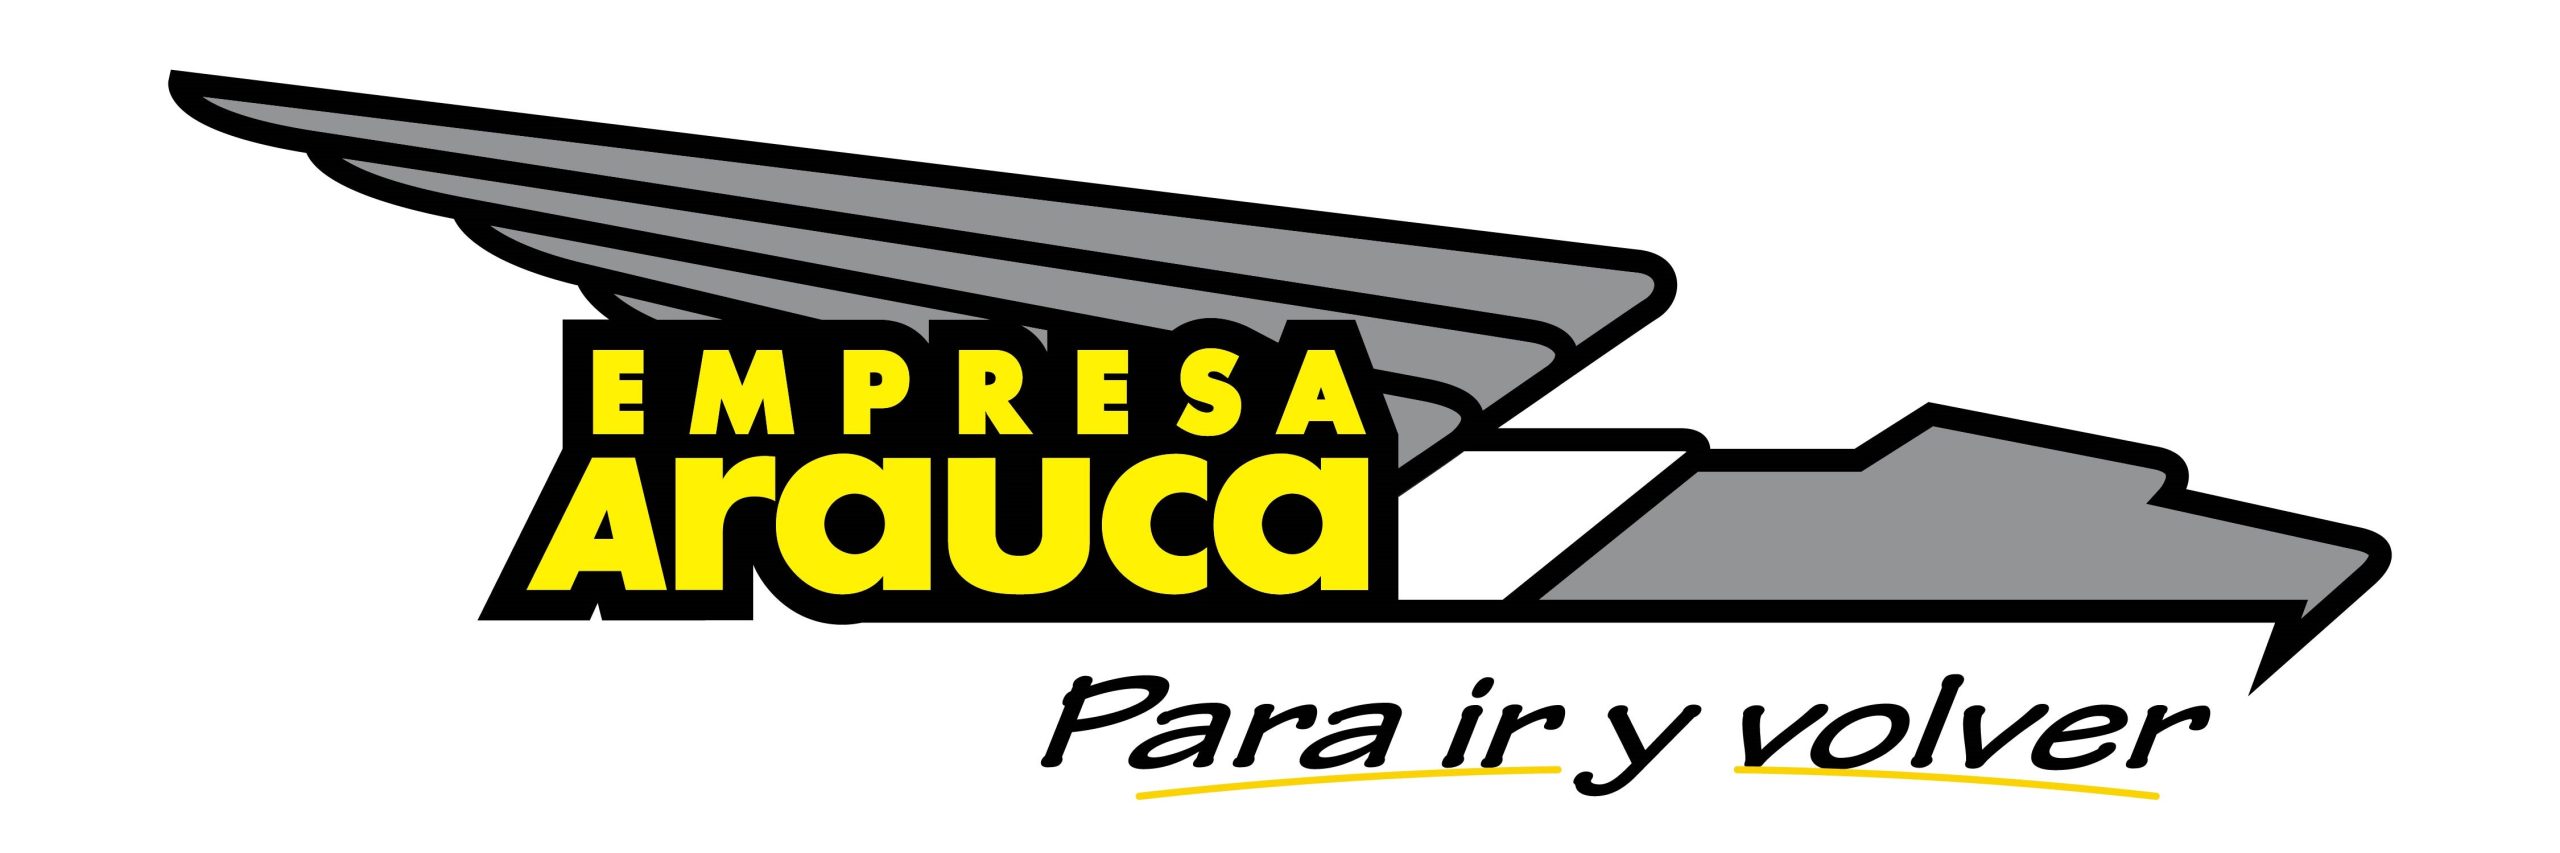 Empresa Arauca S.A.